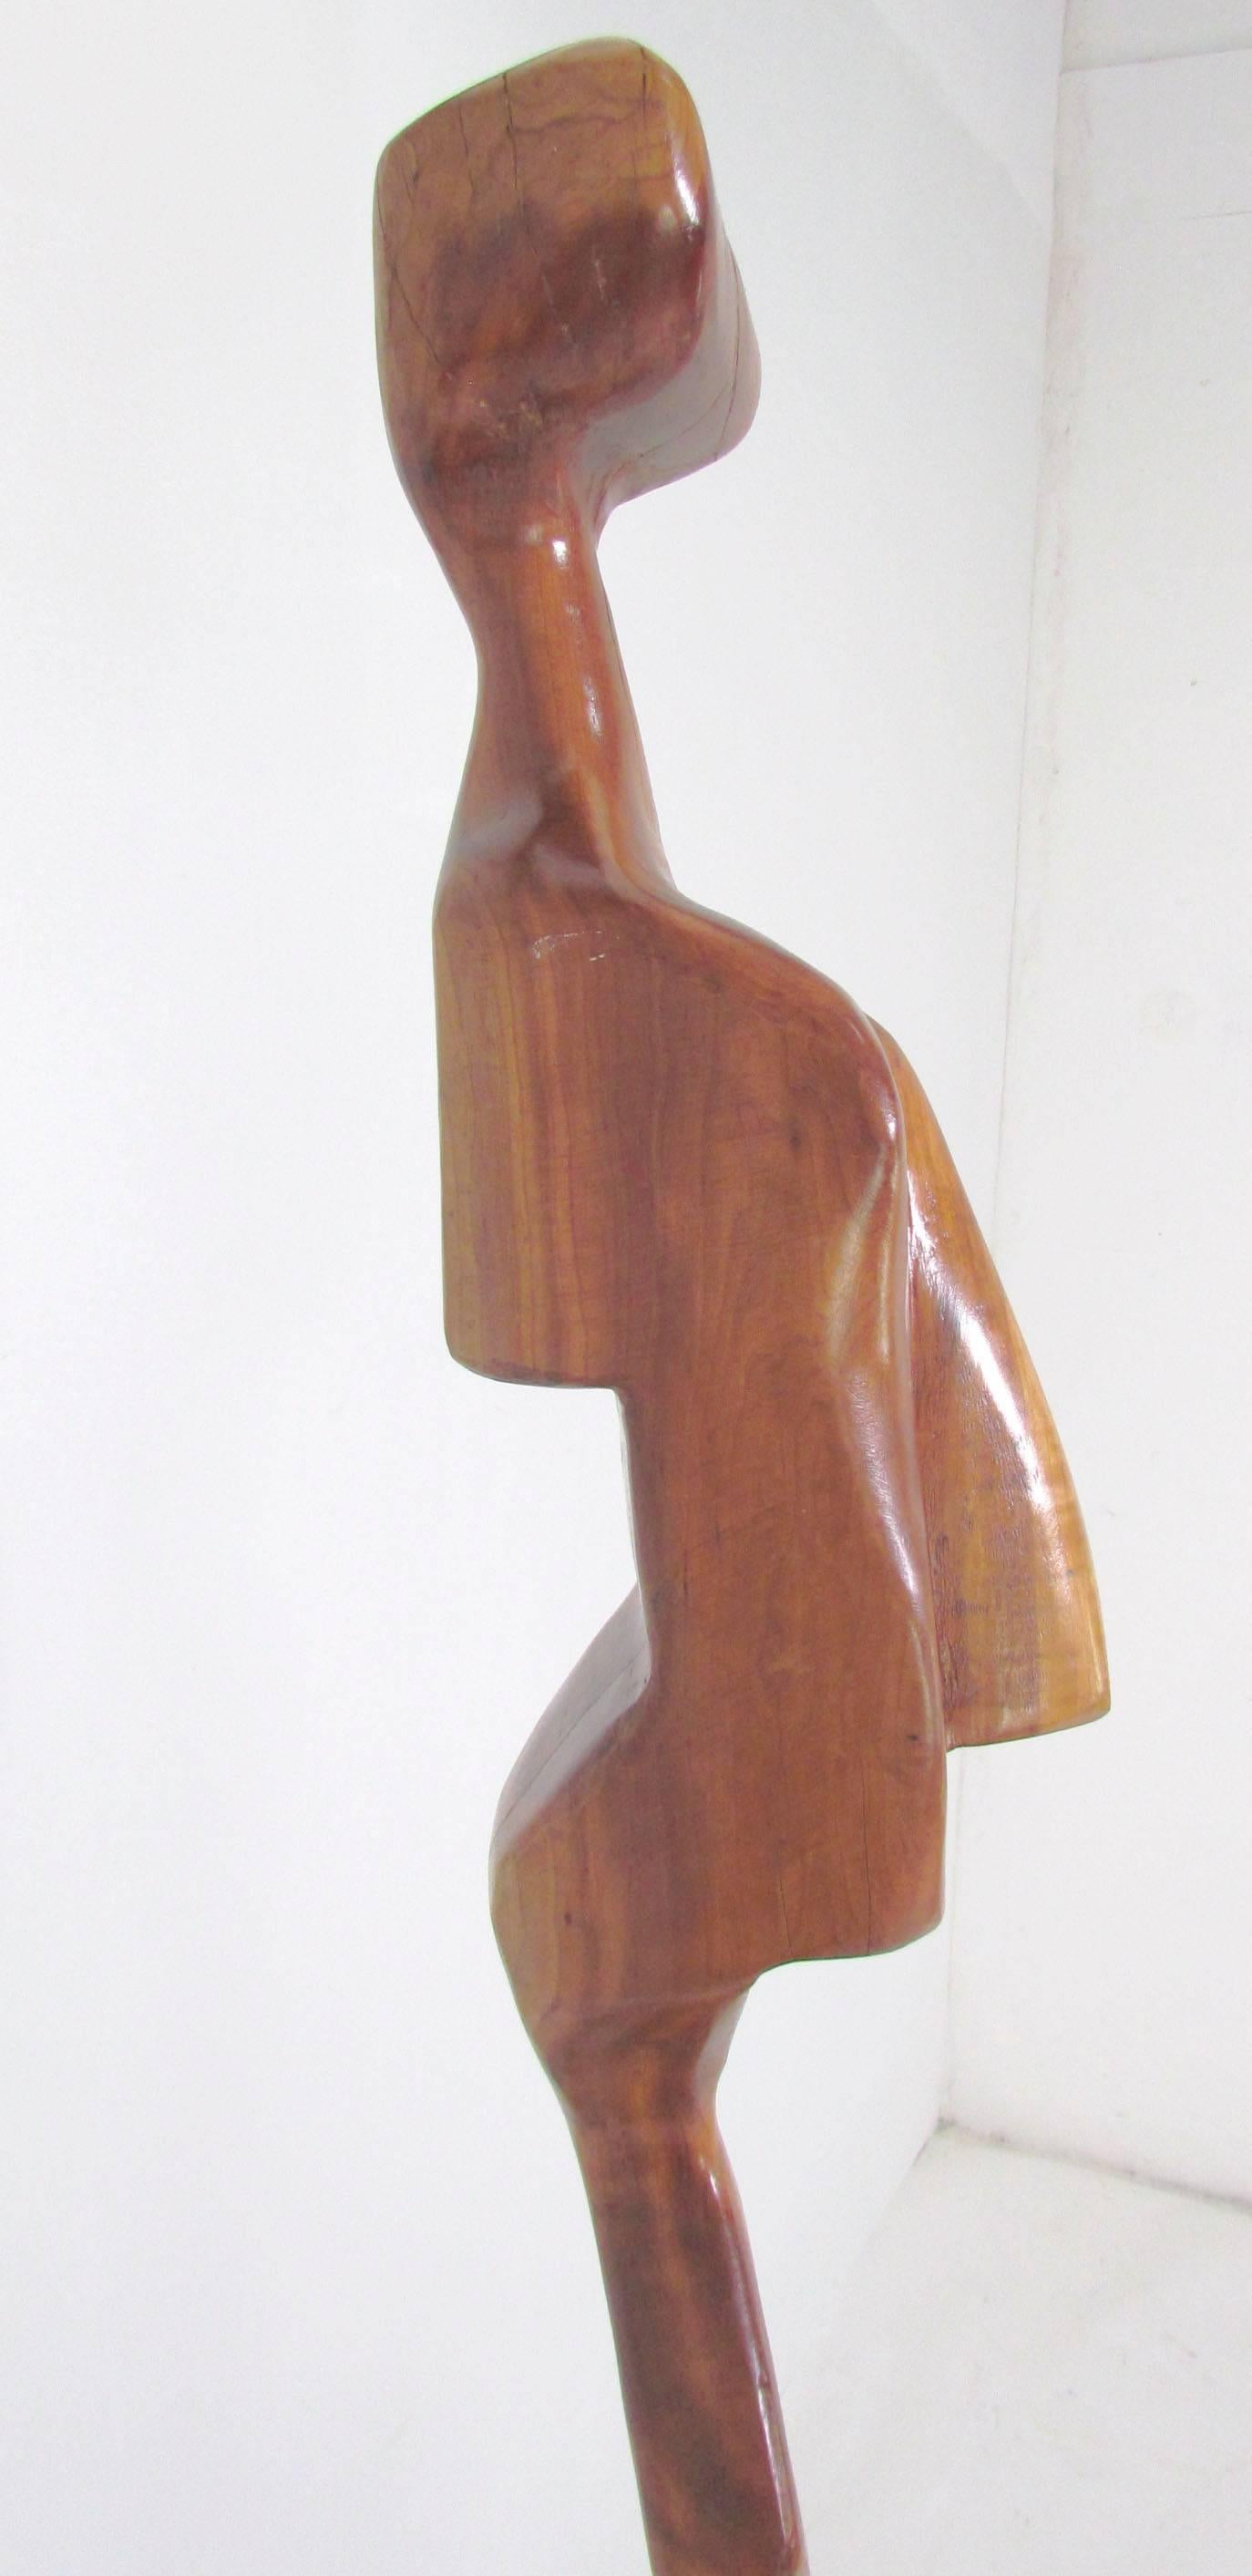 Marble Modernist Carved Wood Sculpture with Burl Pedestal Signed A. Janes, D. 1974